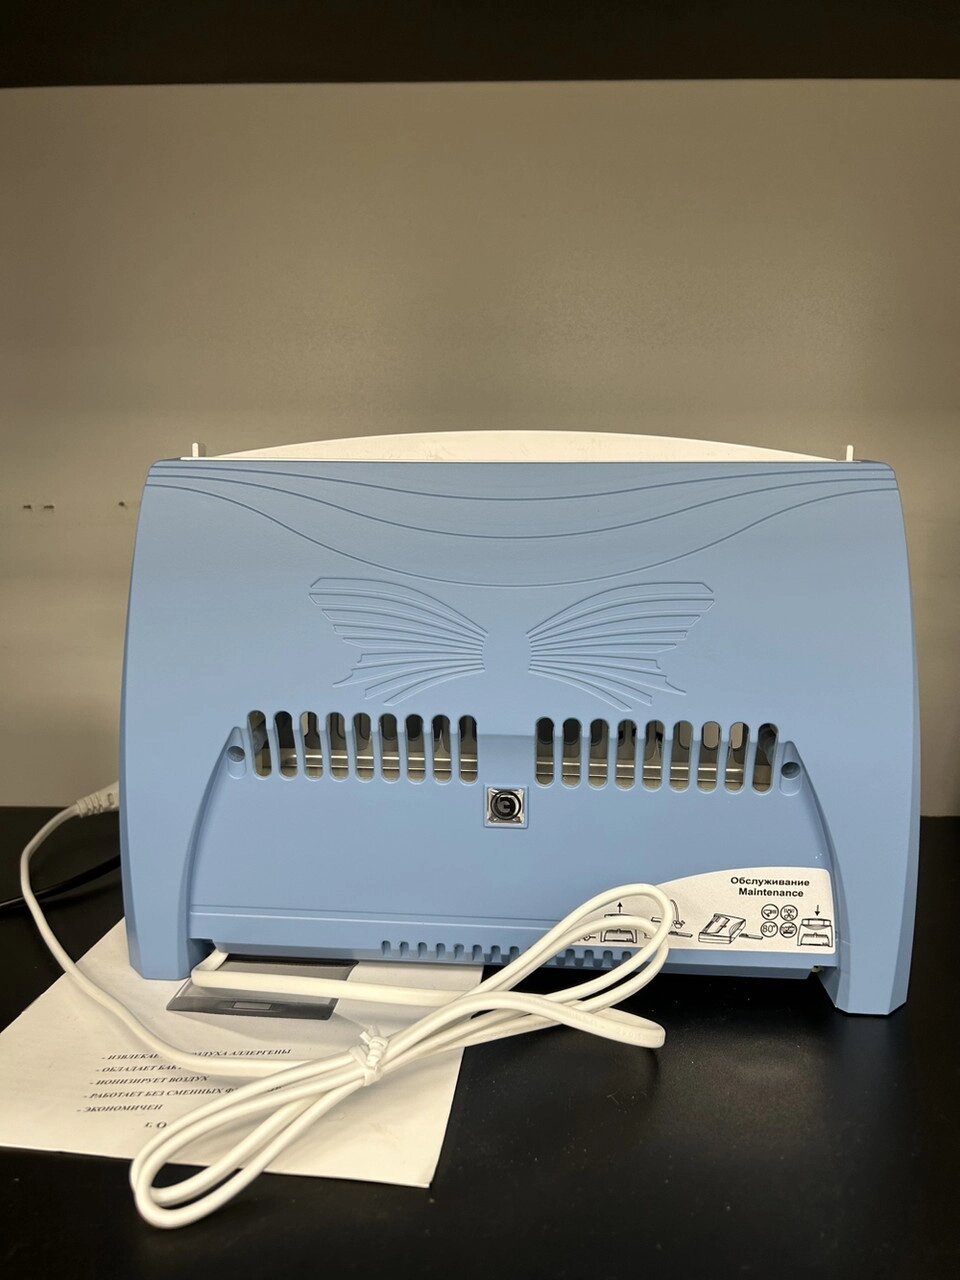 Очисник іонізатор повітря Zenet Супер Плюс ЕКО-С від компанії Медтехніка ZENET - Товари для здоров'я, затишку та комфорта - фото 1